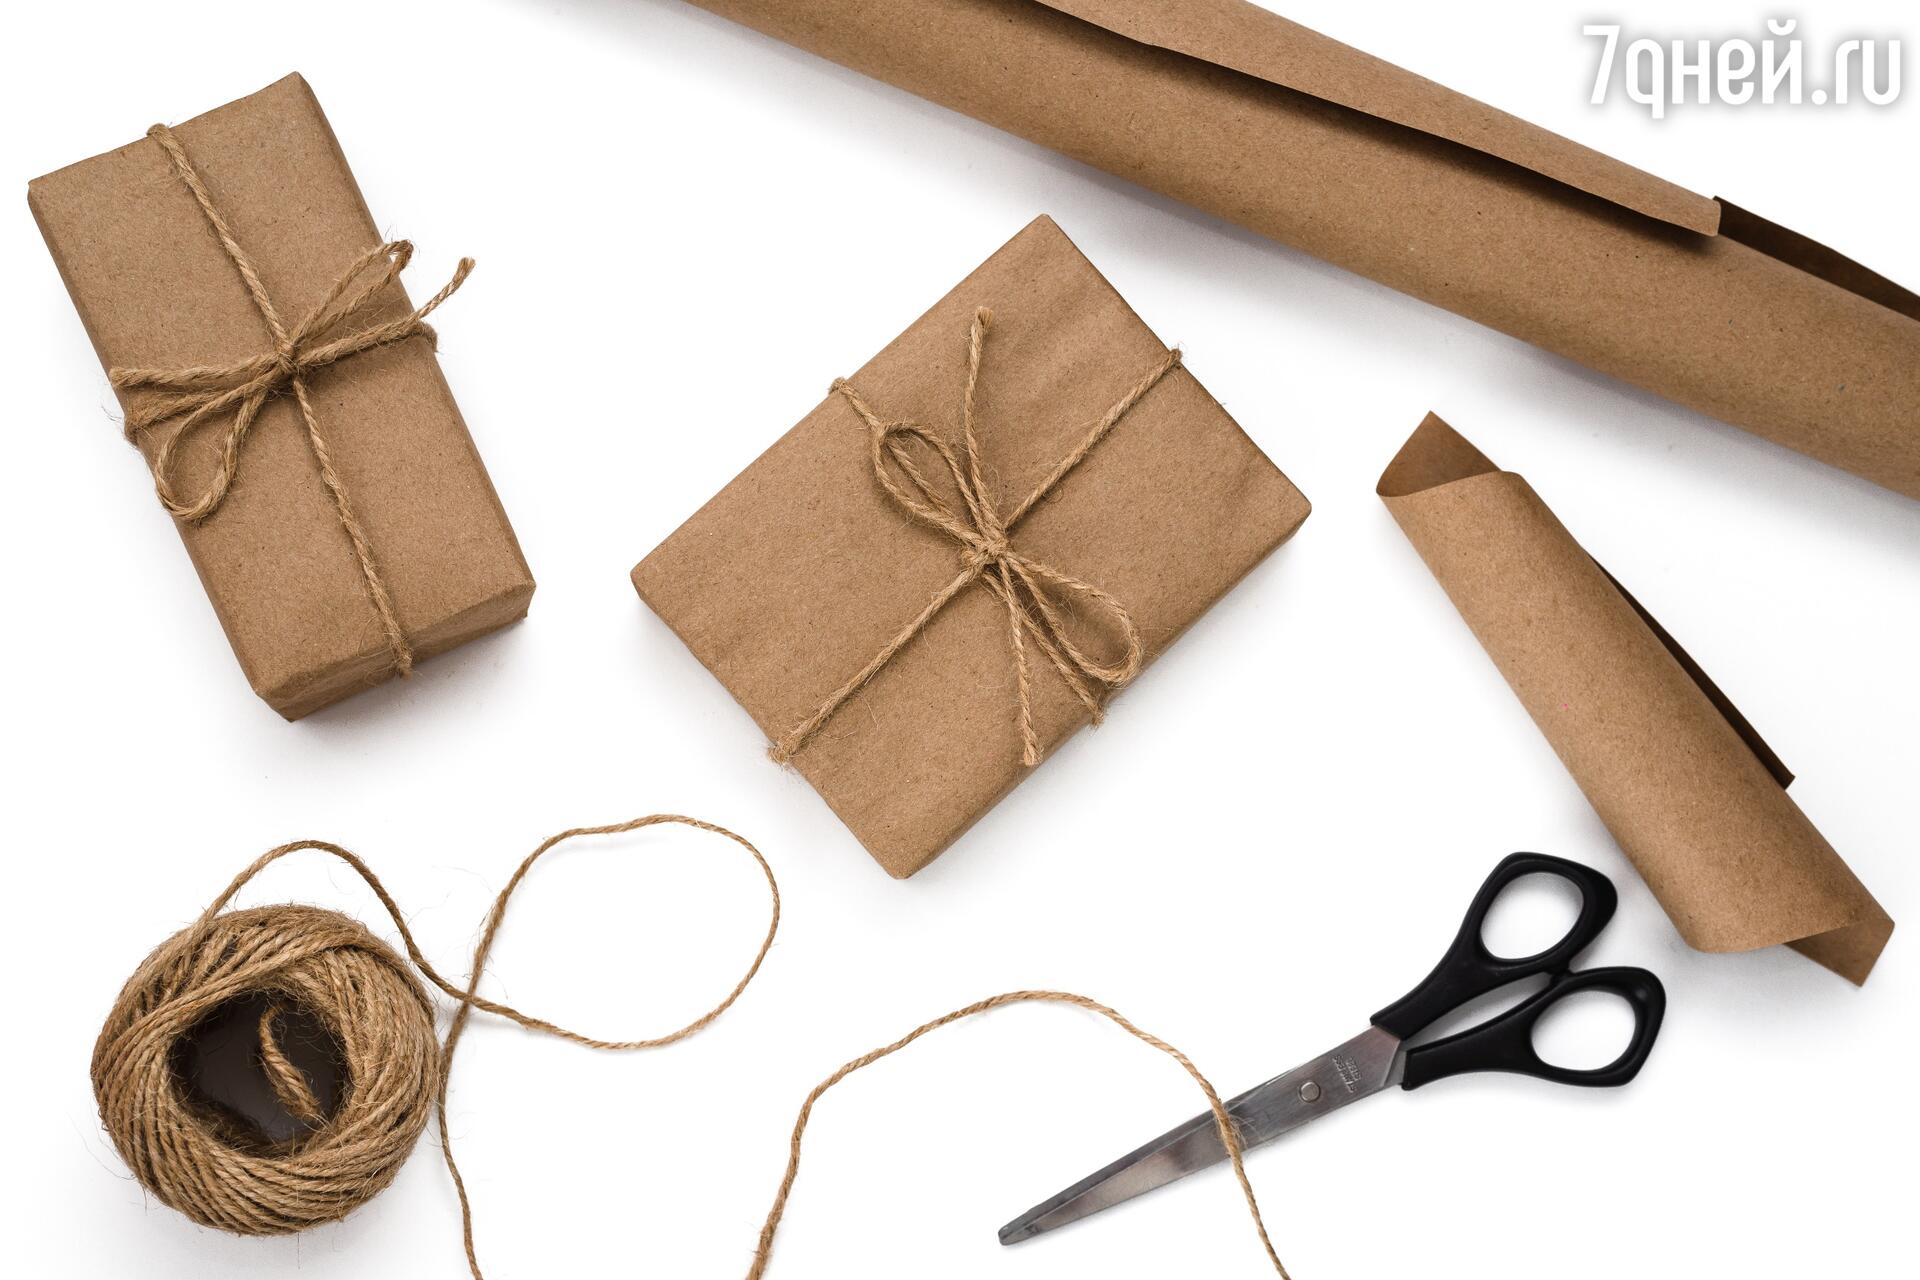 Как Красиво оформить подарок | Подарочная упаковка своими руками | DIY